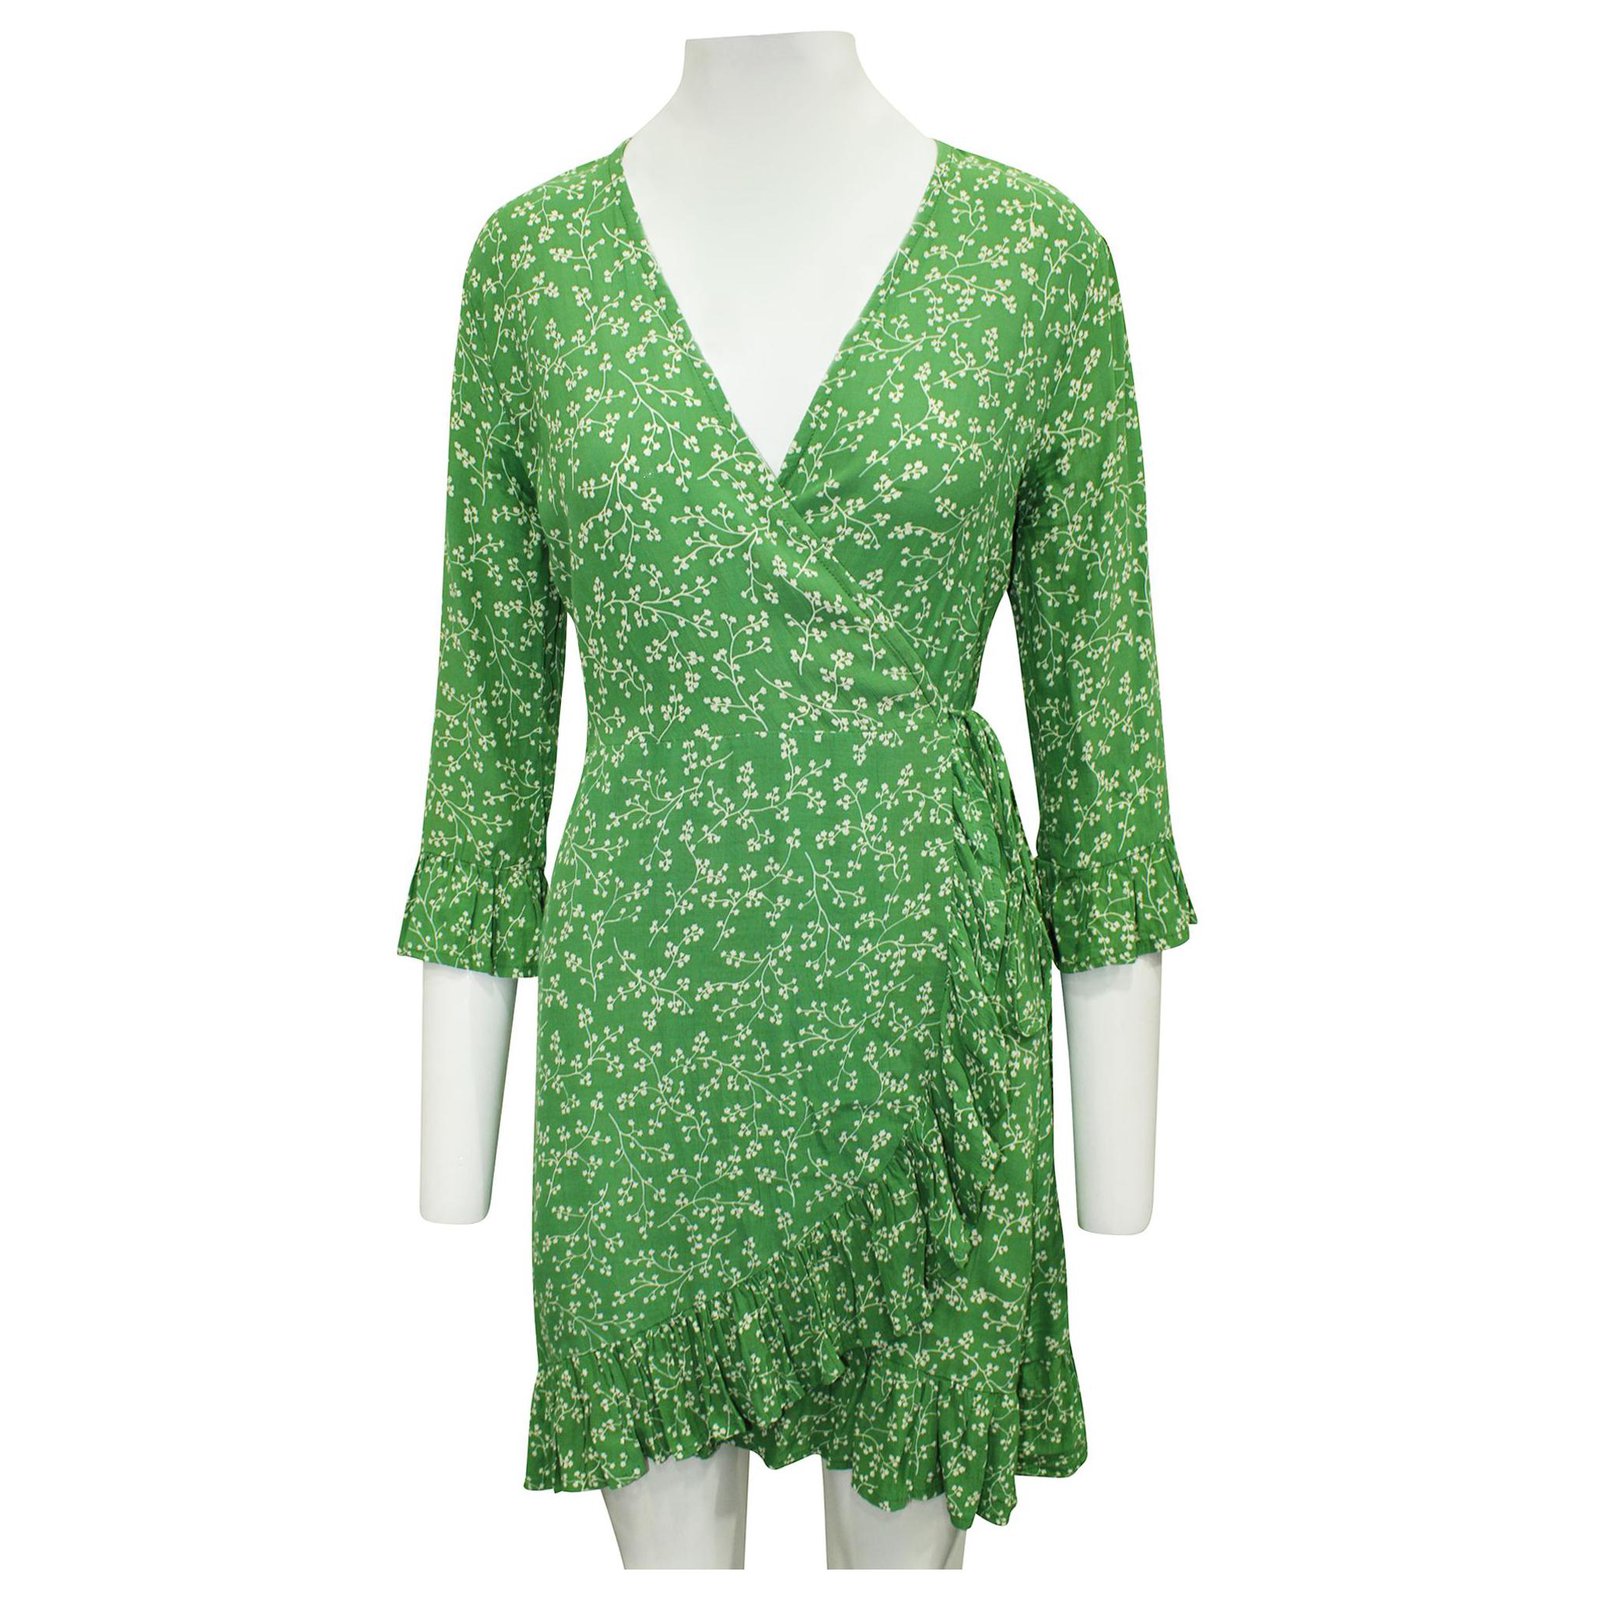 Brand Green Print Wrap Dress Rayon ...